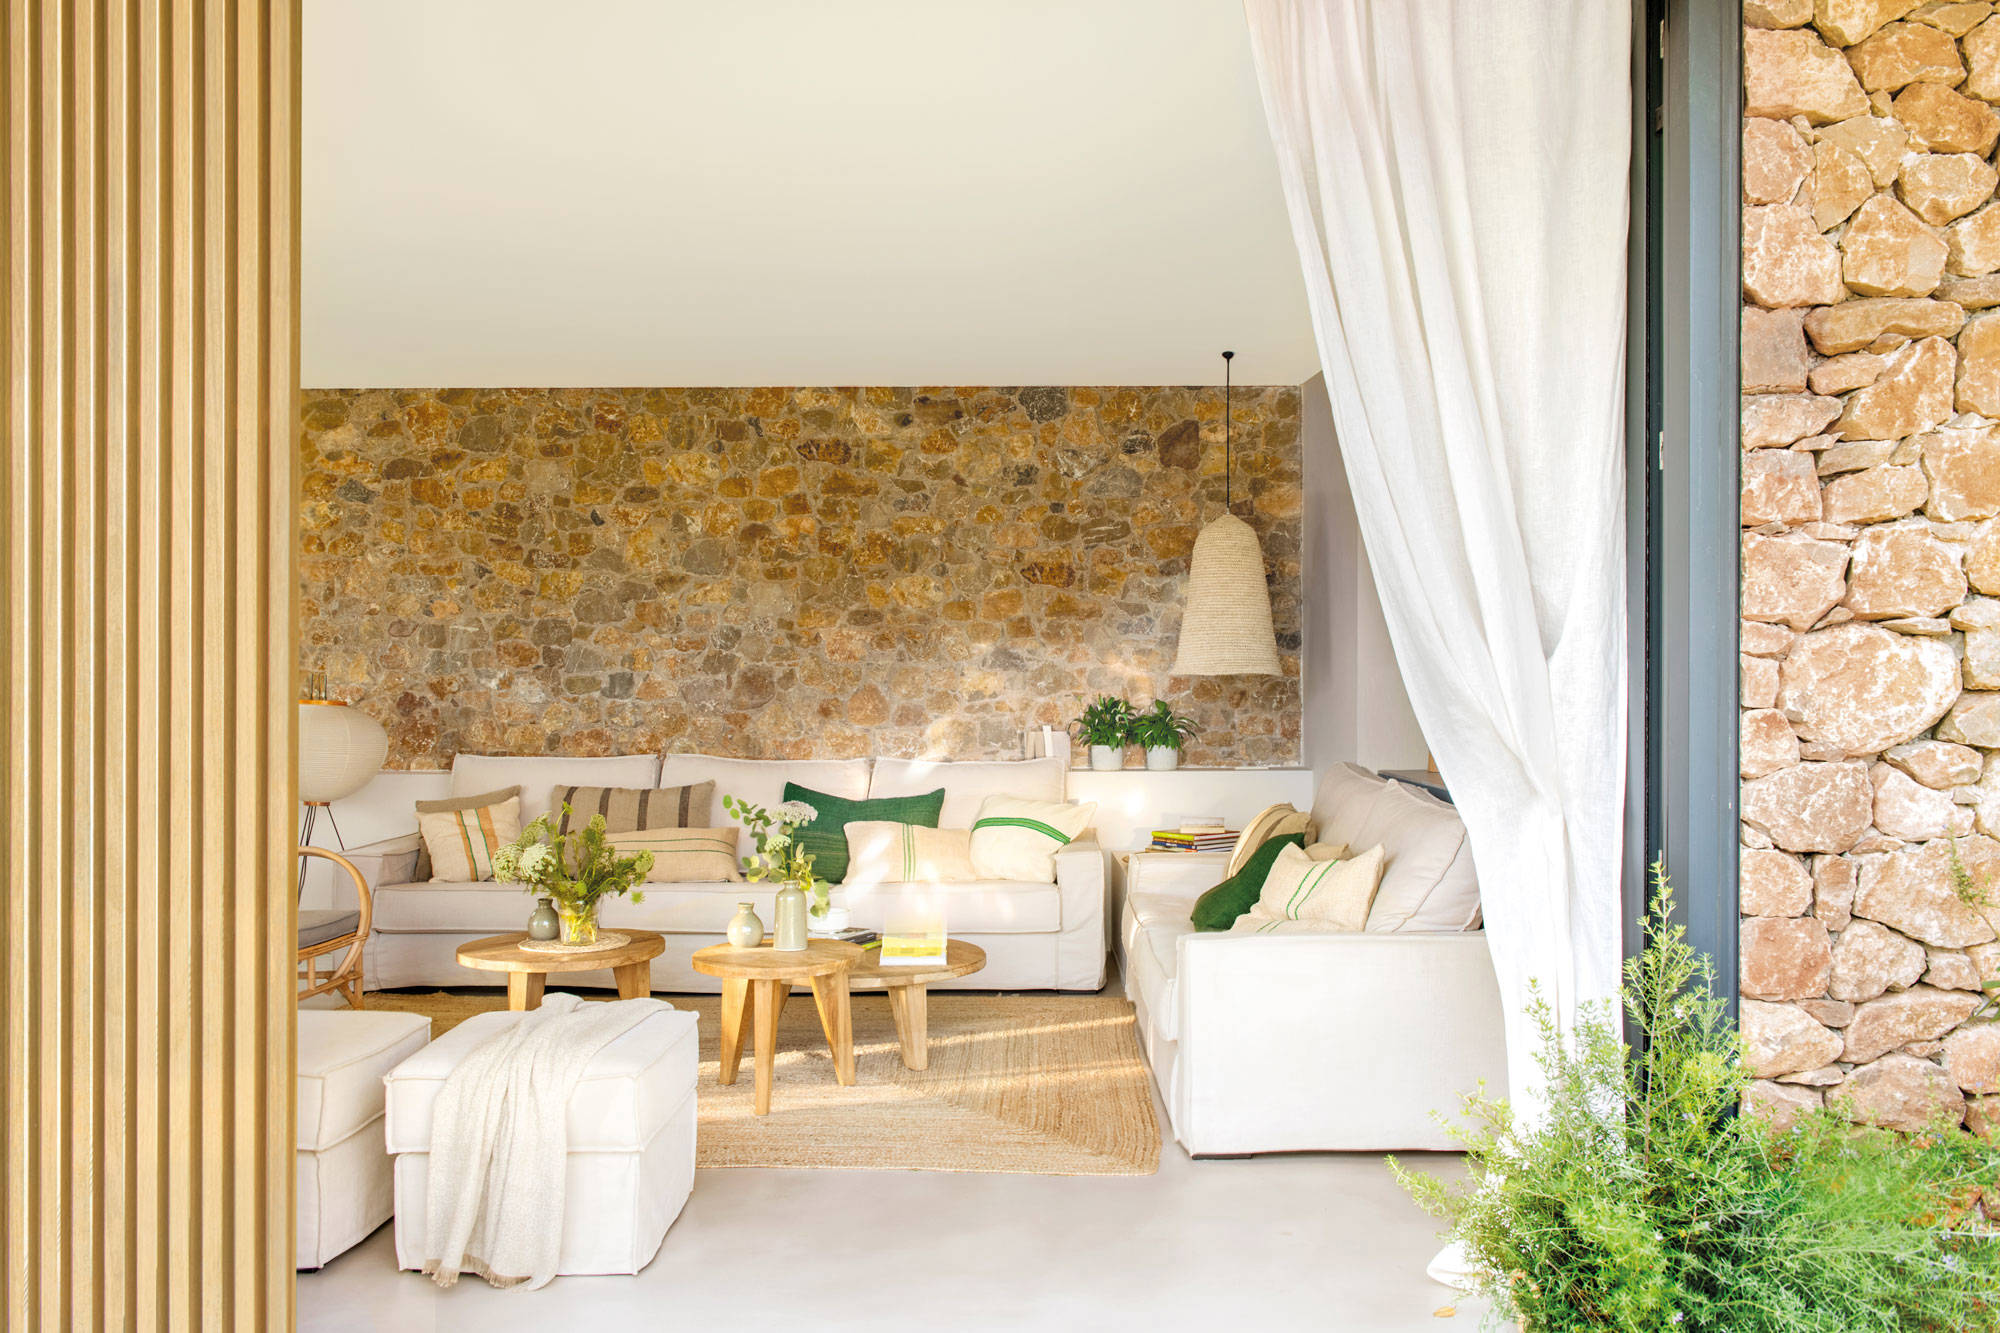 Salón de primavera con pared de piedra, sofás blancos y textiles en tonos tierra y verdes.